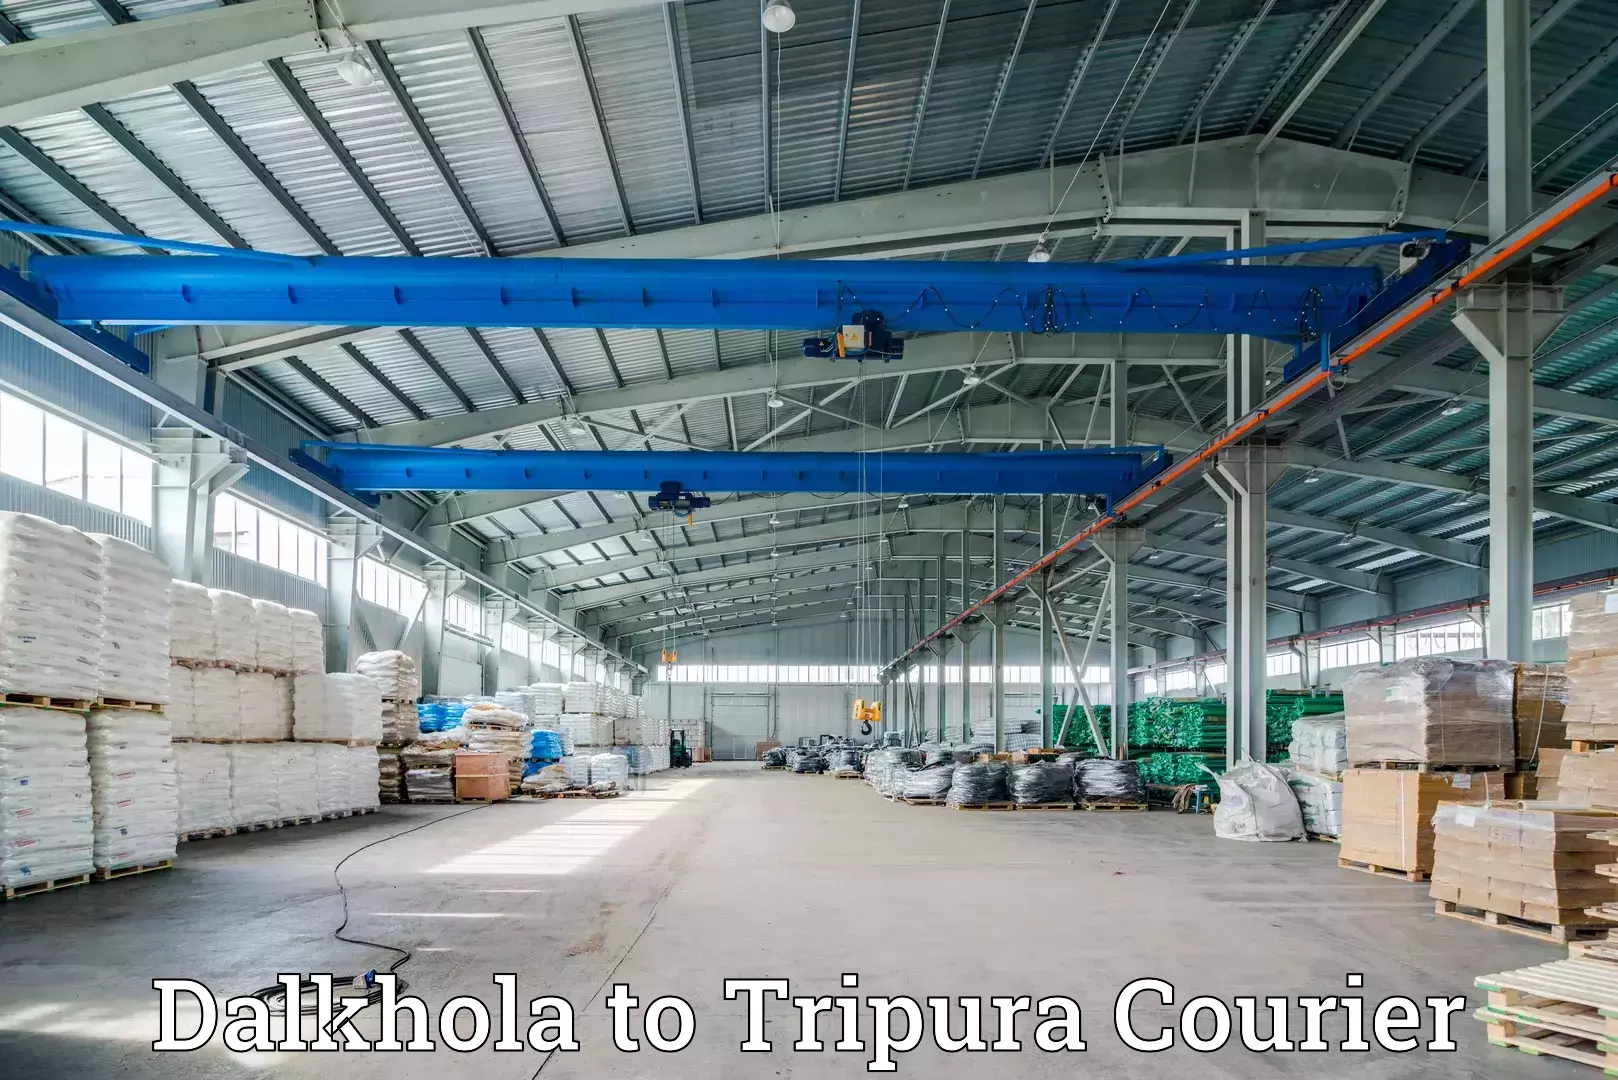 Next-day freight services Dalkhola to Tripura